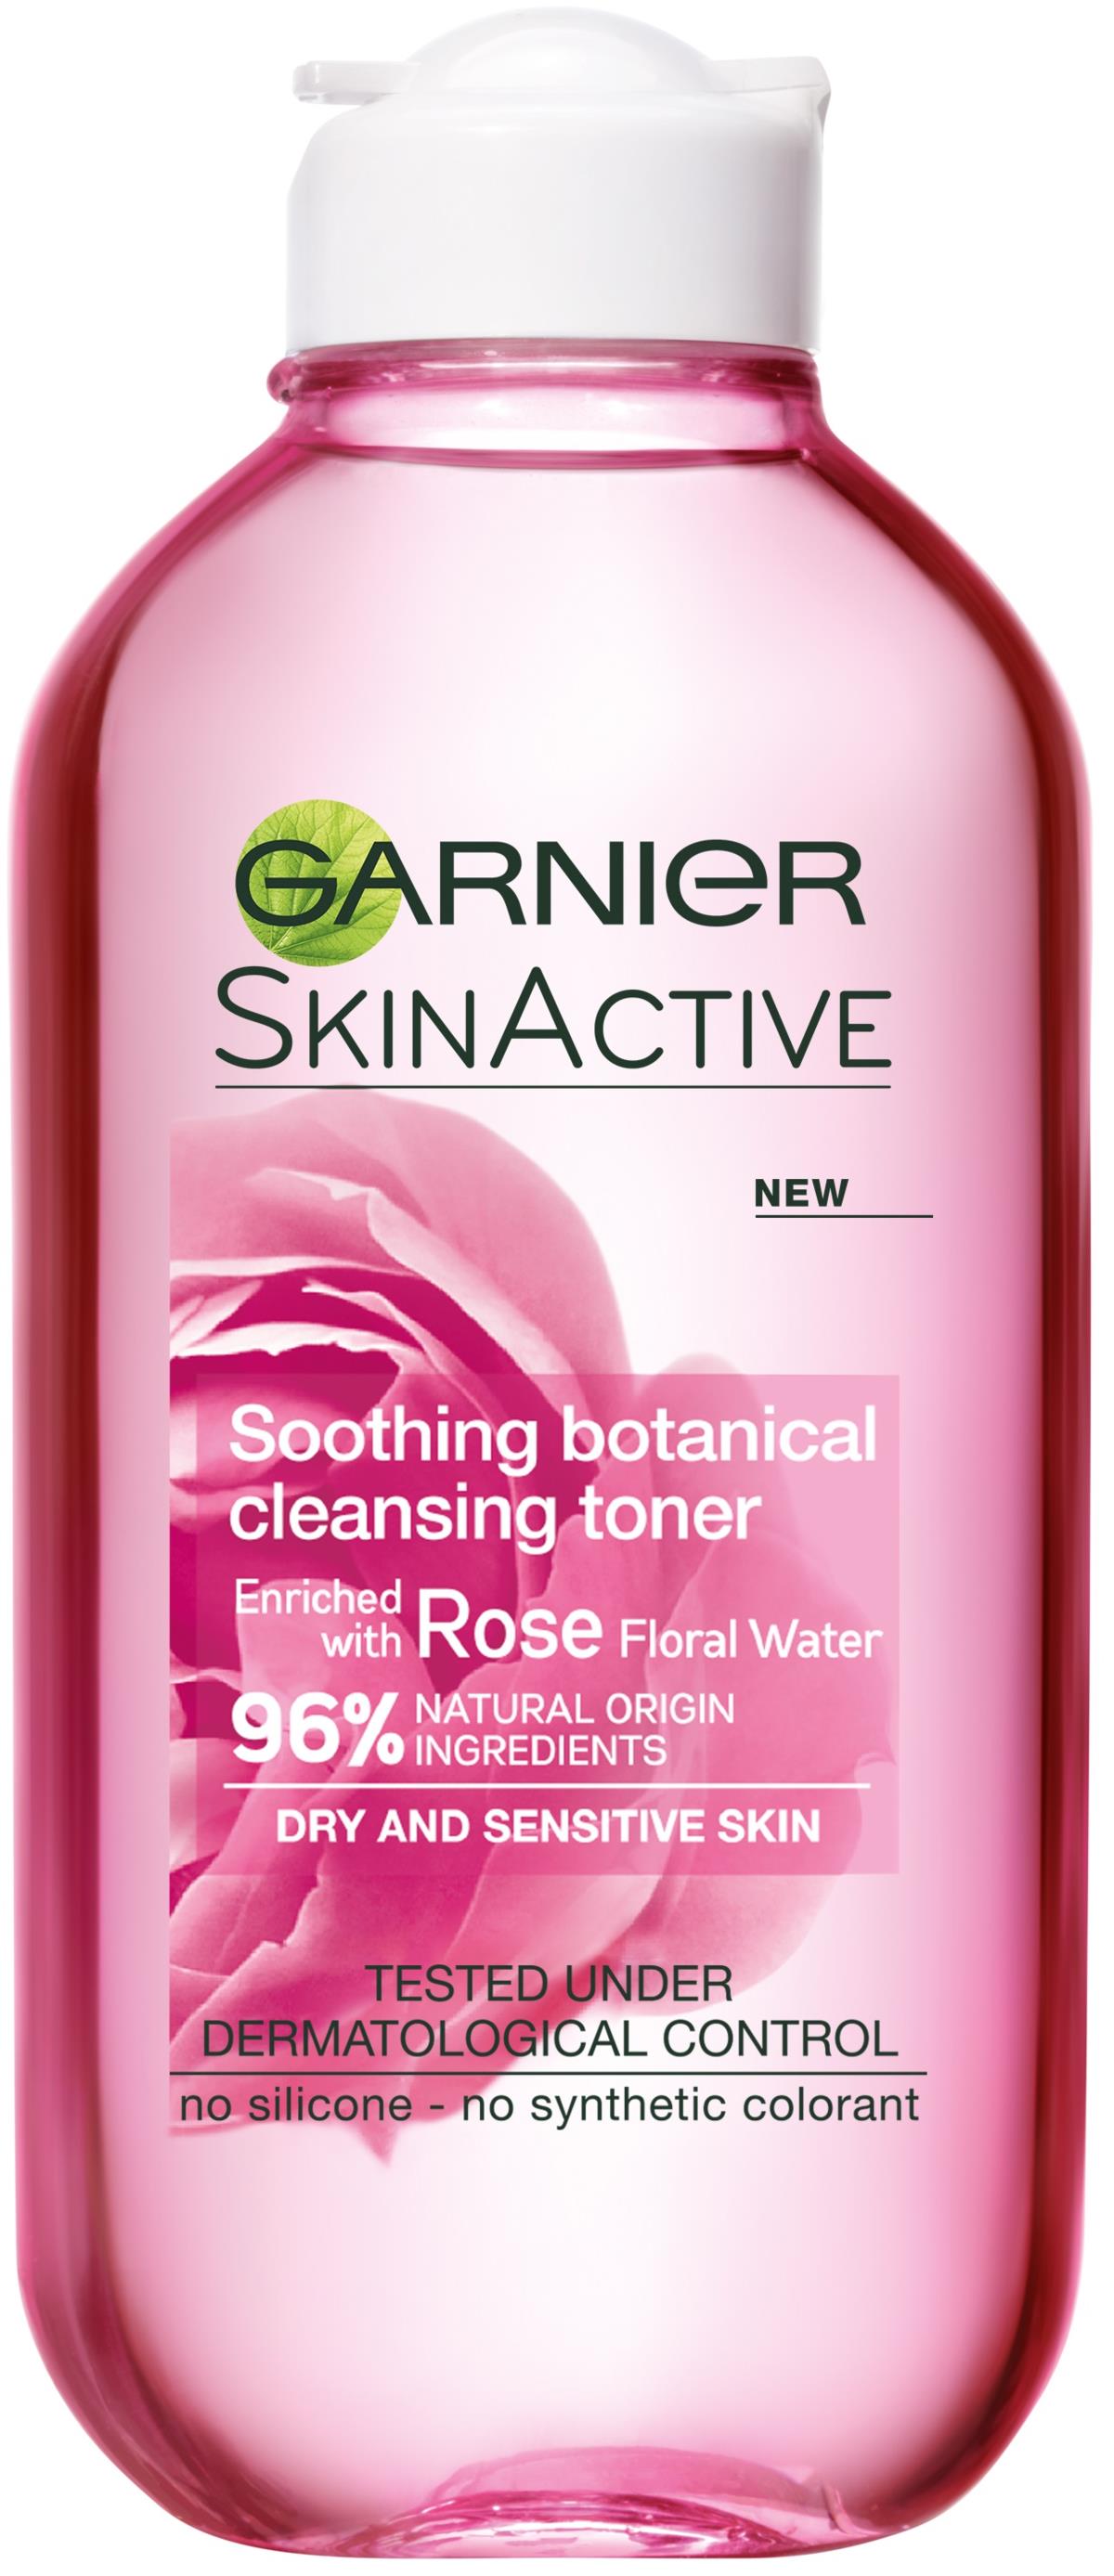 Garnier SkinActive Soothing ml Toner 200 Cleansing Botanical